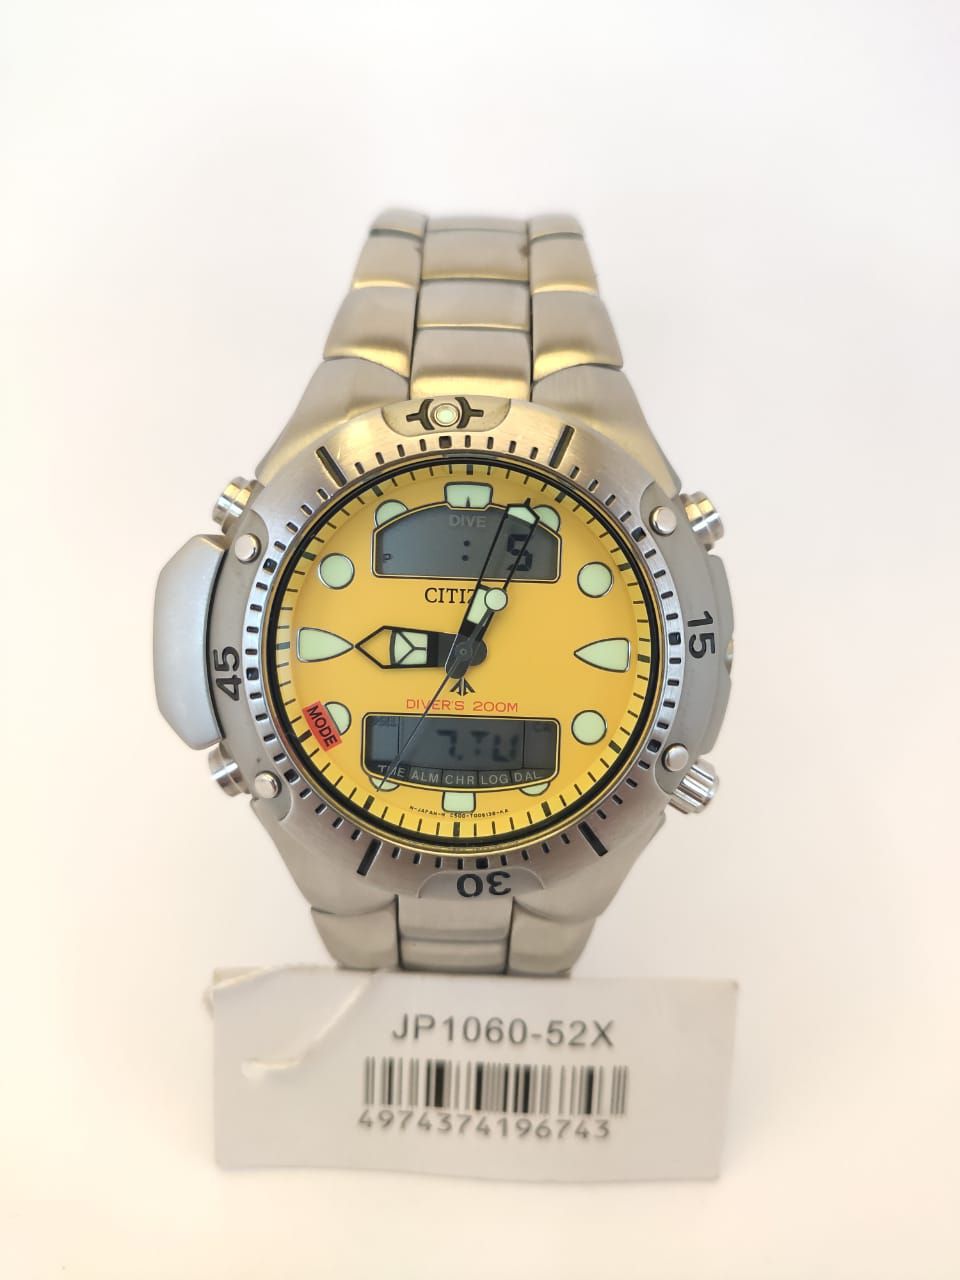 Relógio Masculino CITIZEN Aqualand JP1060-52X - Altarelojoria relógios  originais invicta orient casio e muito mais.